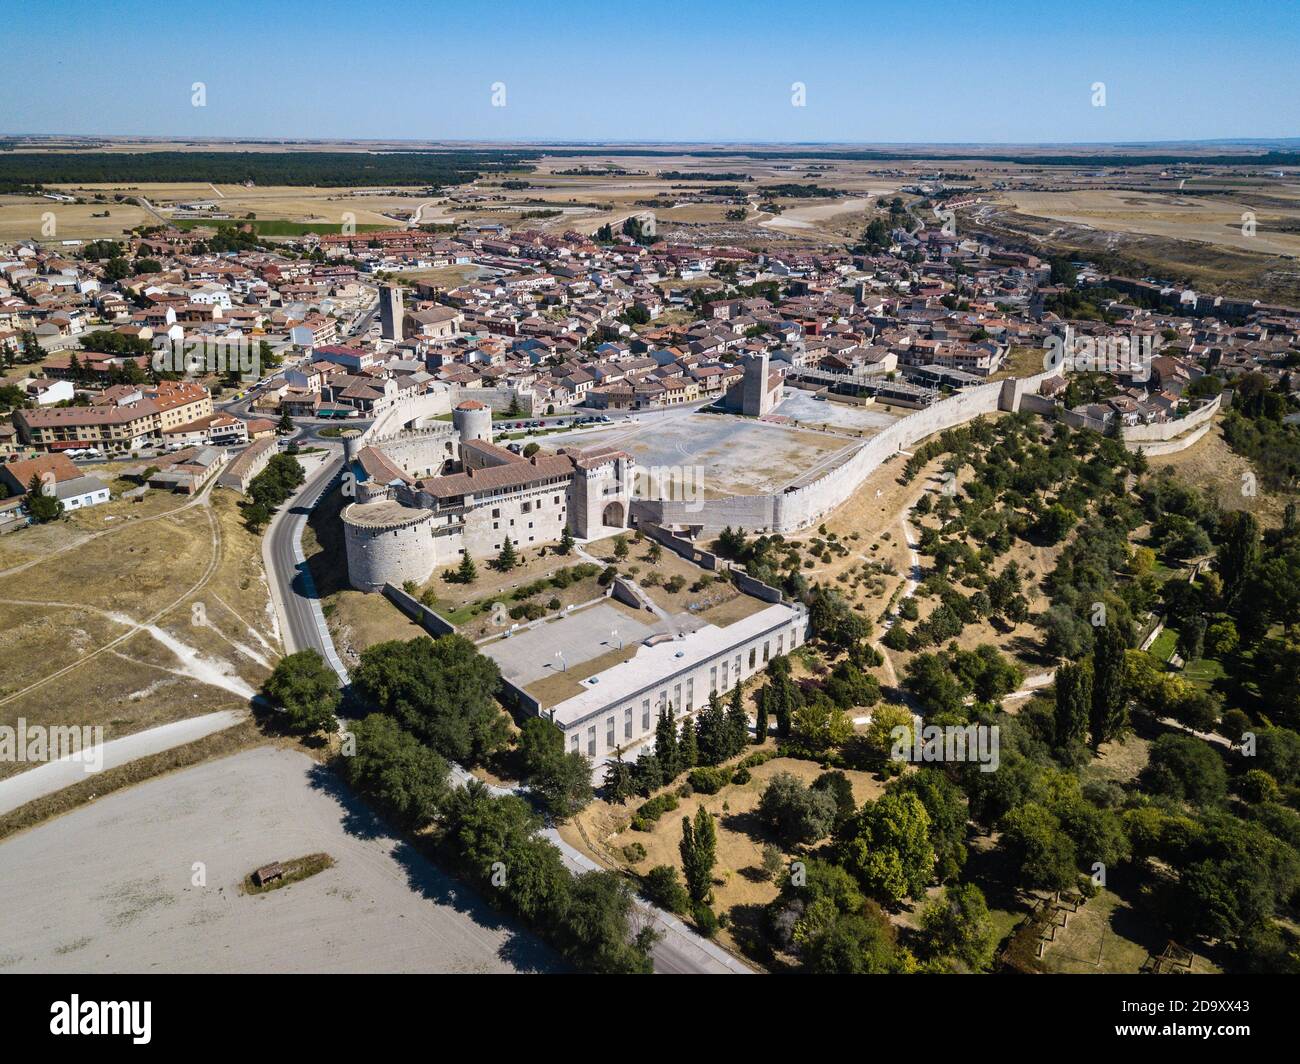 Vista aerea di Cuellar, un piccolo centro storico in provincia di Segovia, con il castello ricostruito in primo piano. Foto Stock